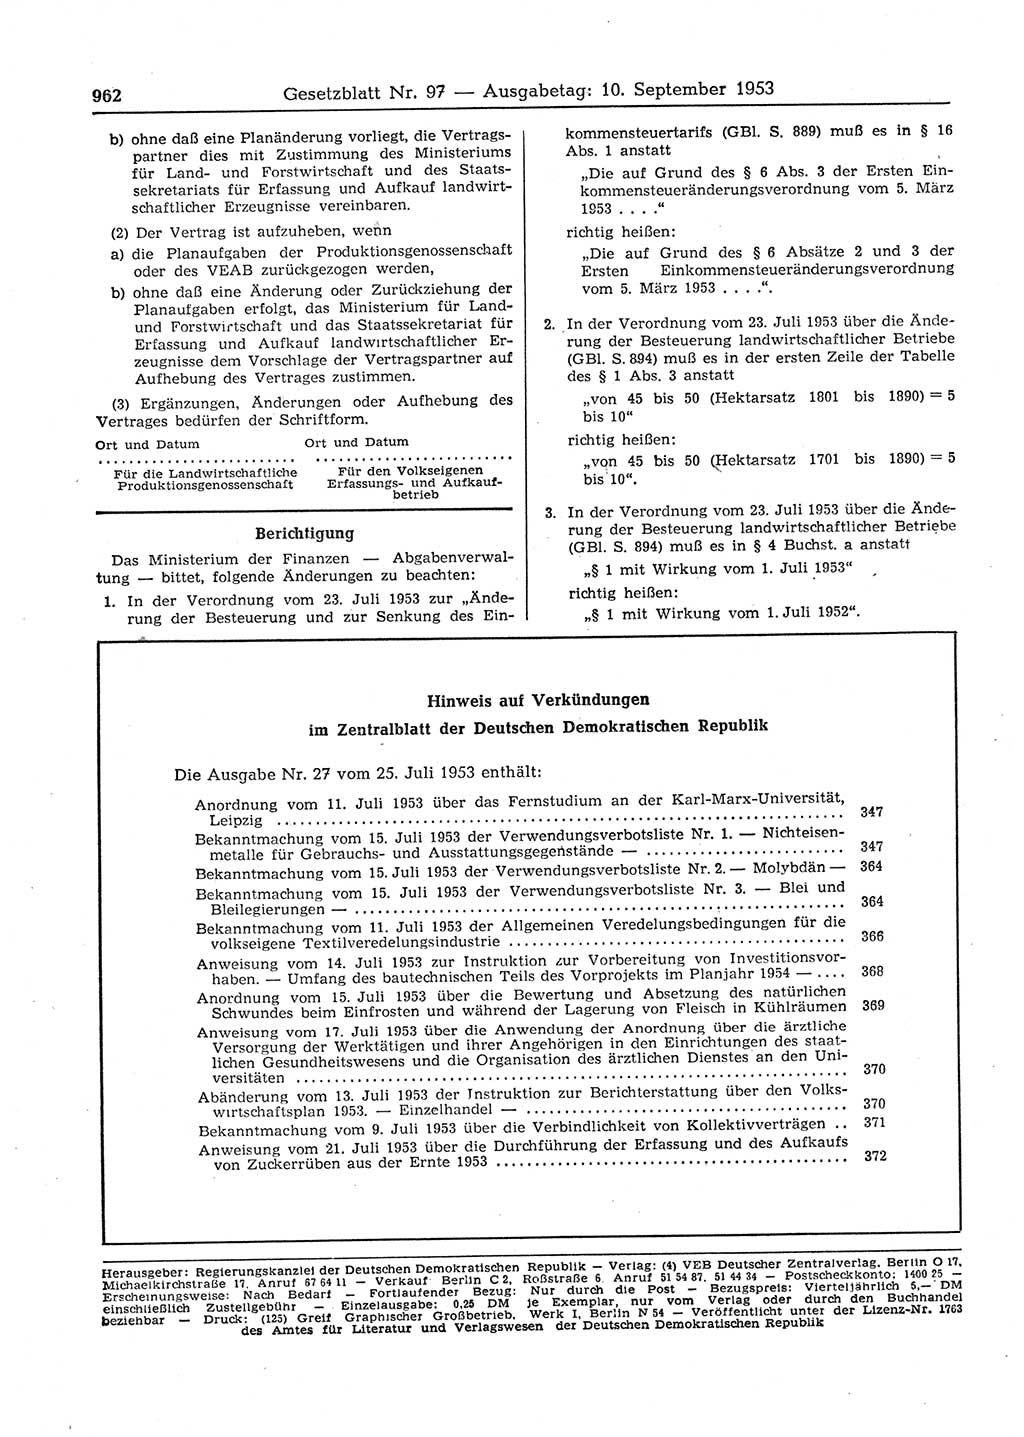 Gesetzblatt (GBl.) der Deutschen Demokratischen Republik (DDR) 1953, Seite 962 (GBl. DDR 1953, S. 962)